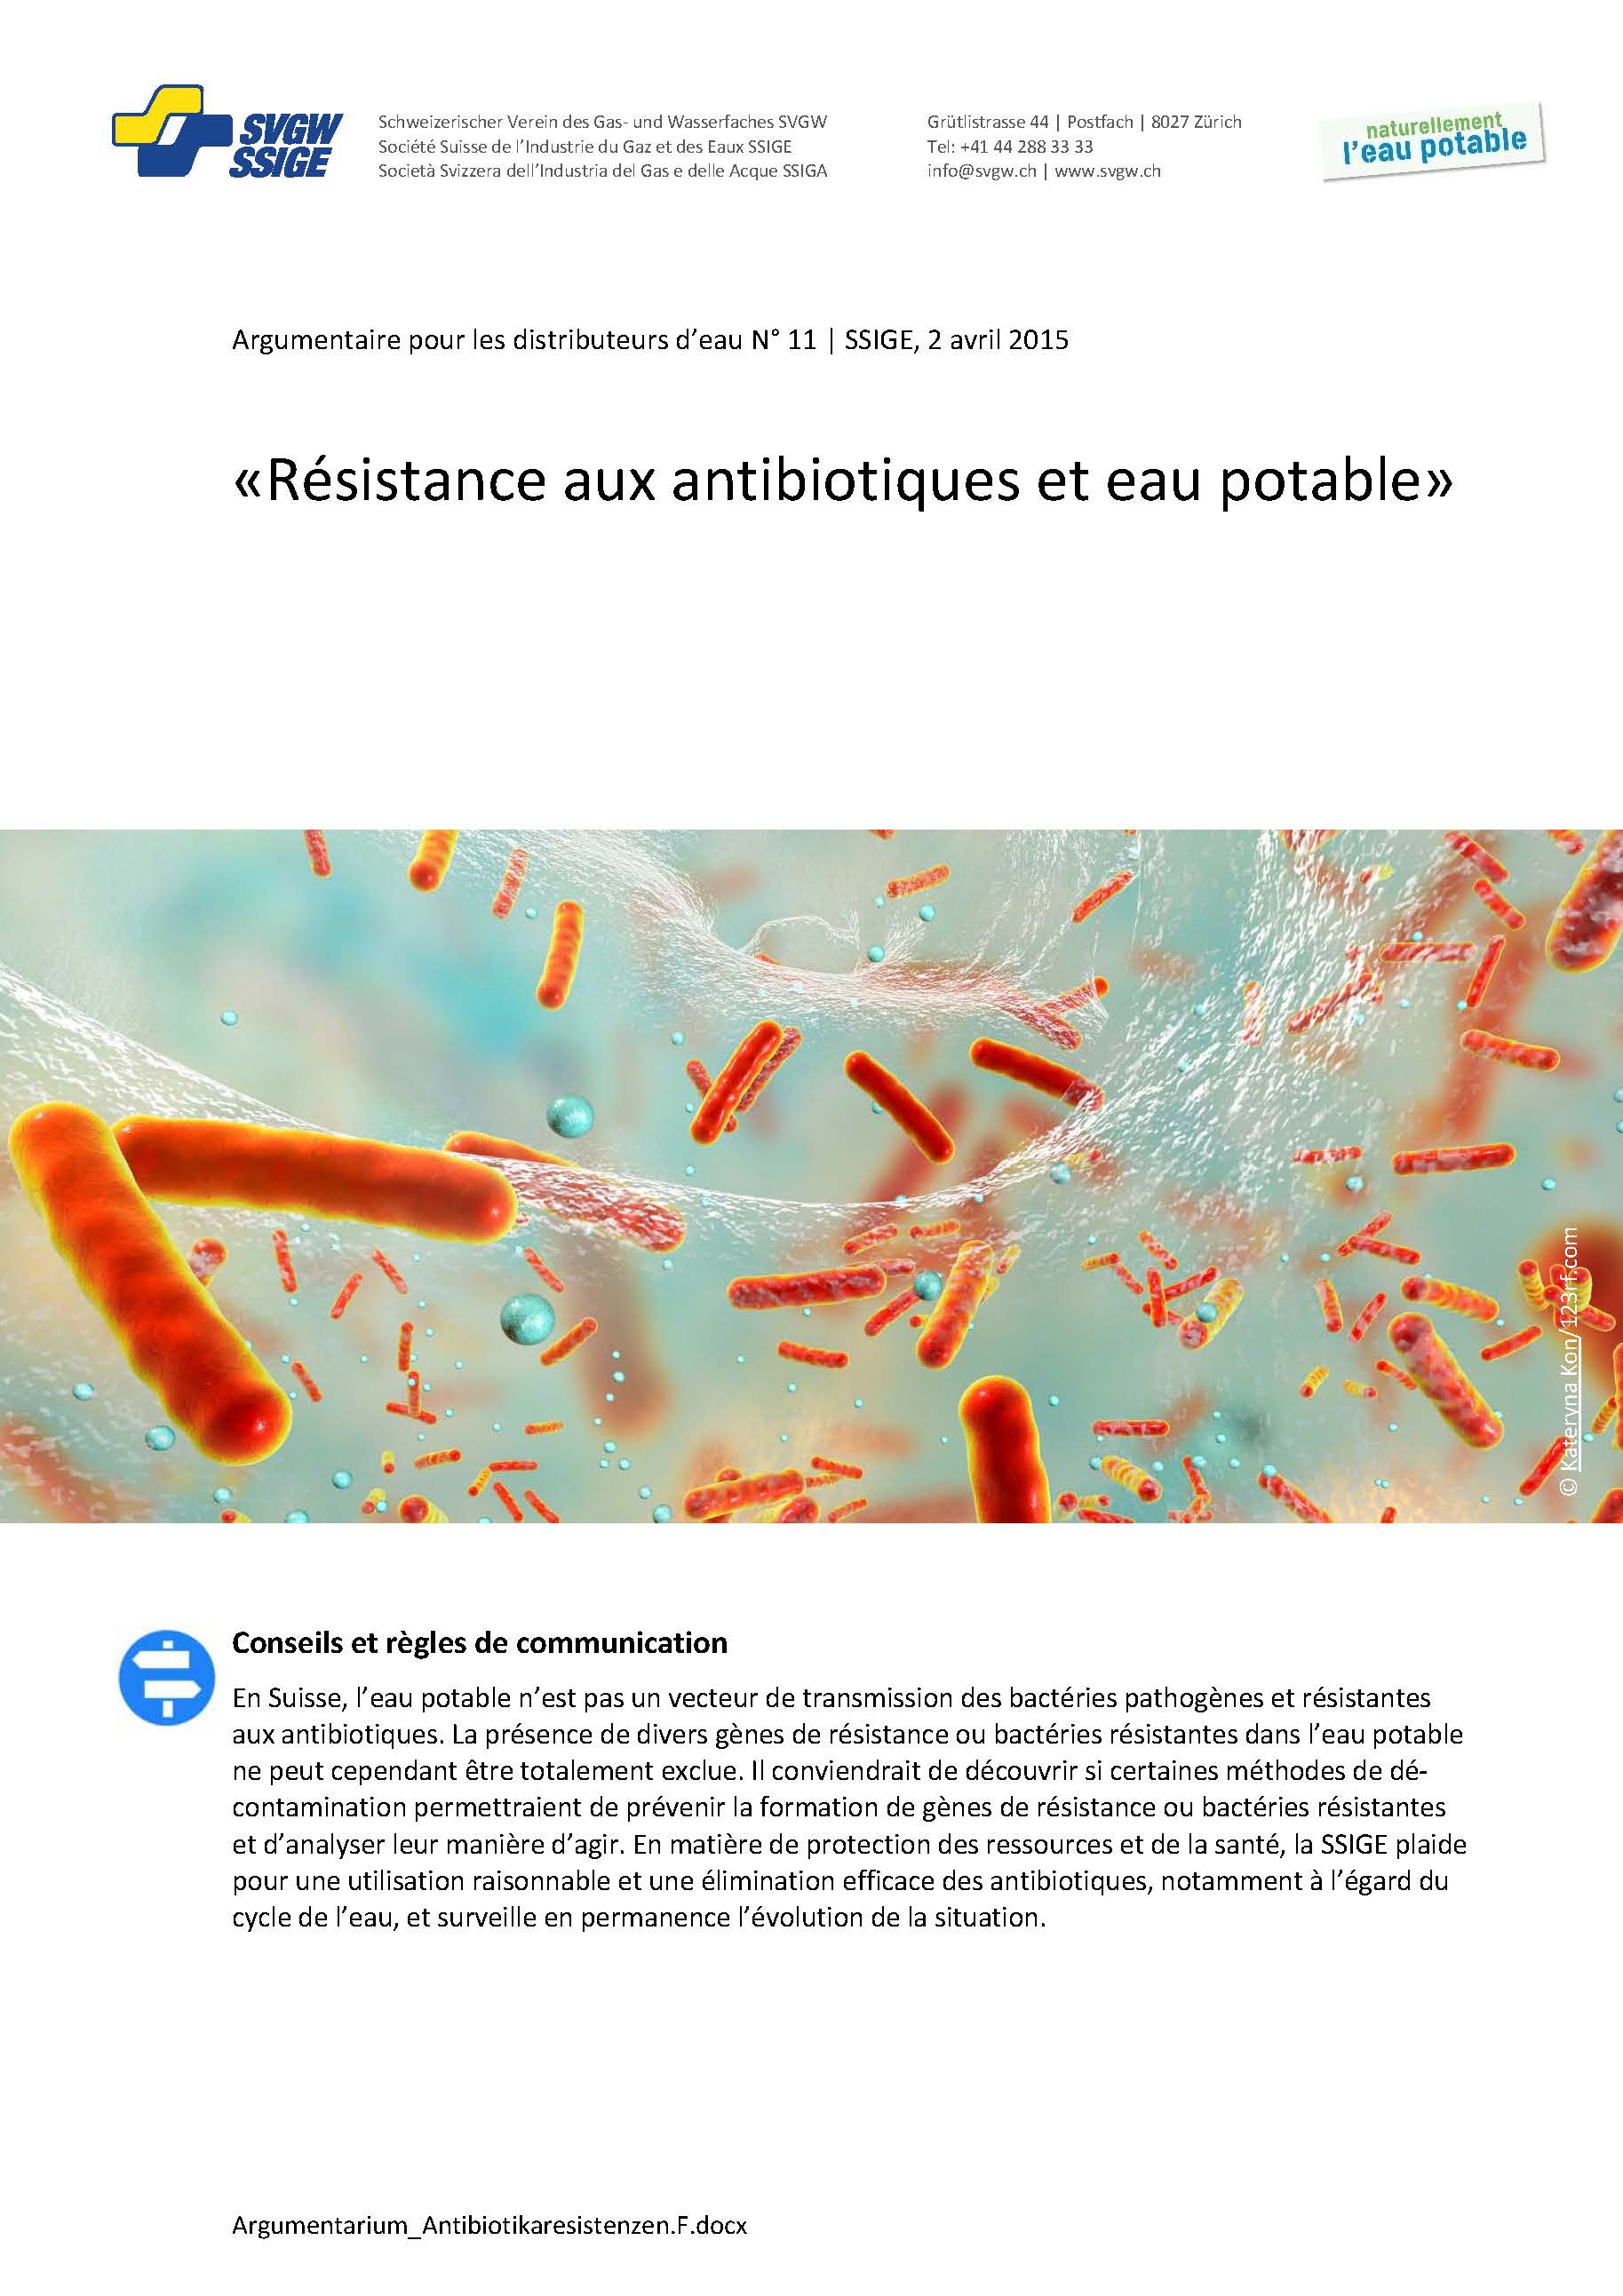 Argumentaire: «Résistance aux antibio-tiques et eau potable»